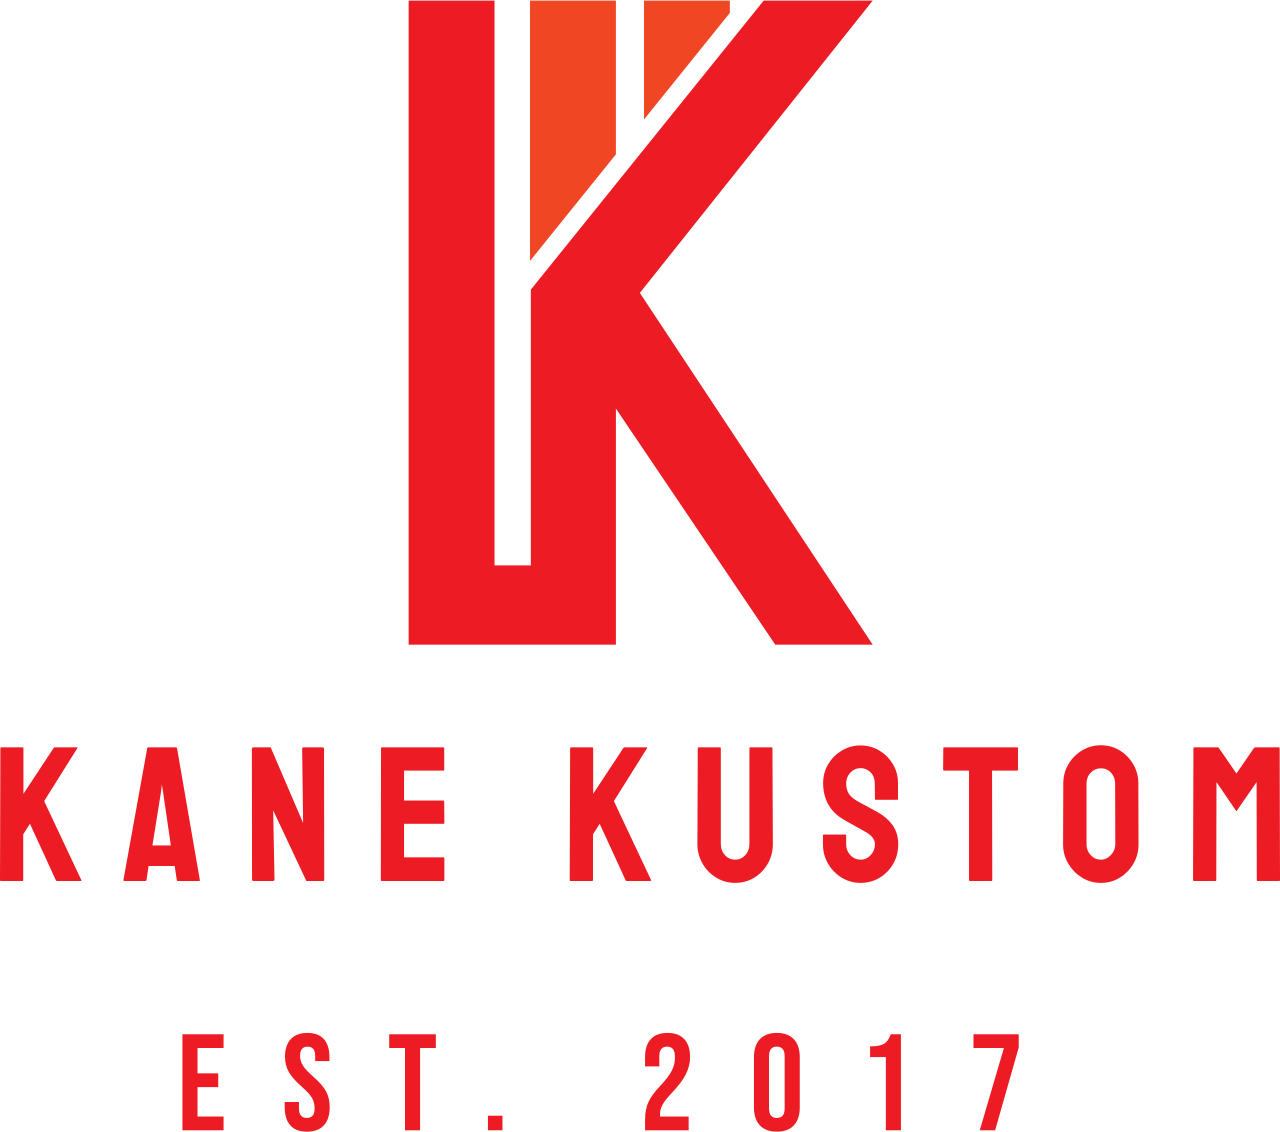 Kane kustom's web page